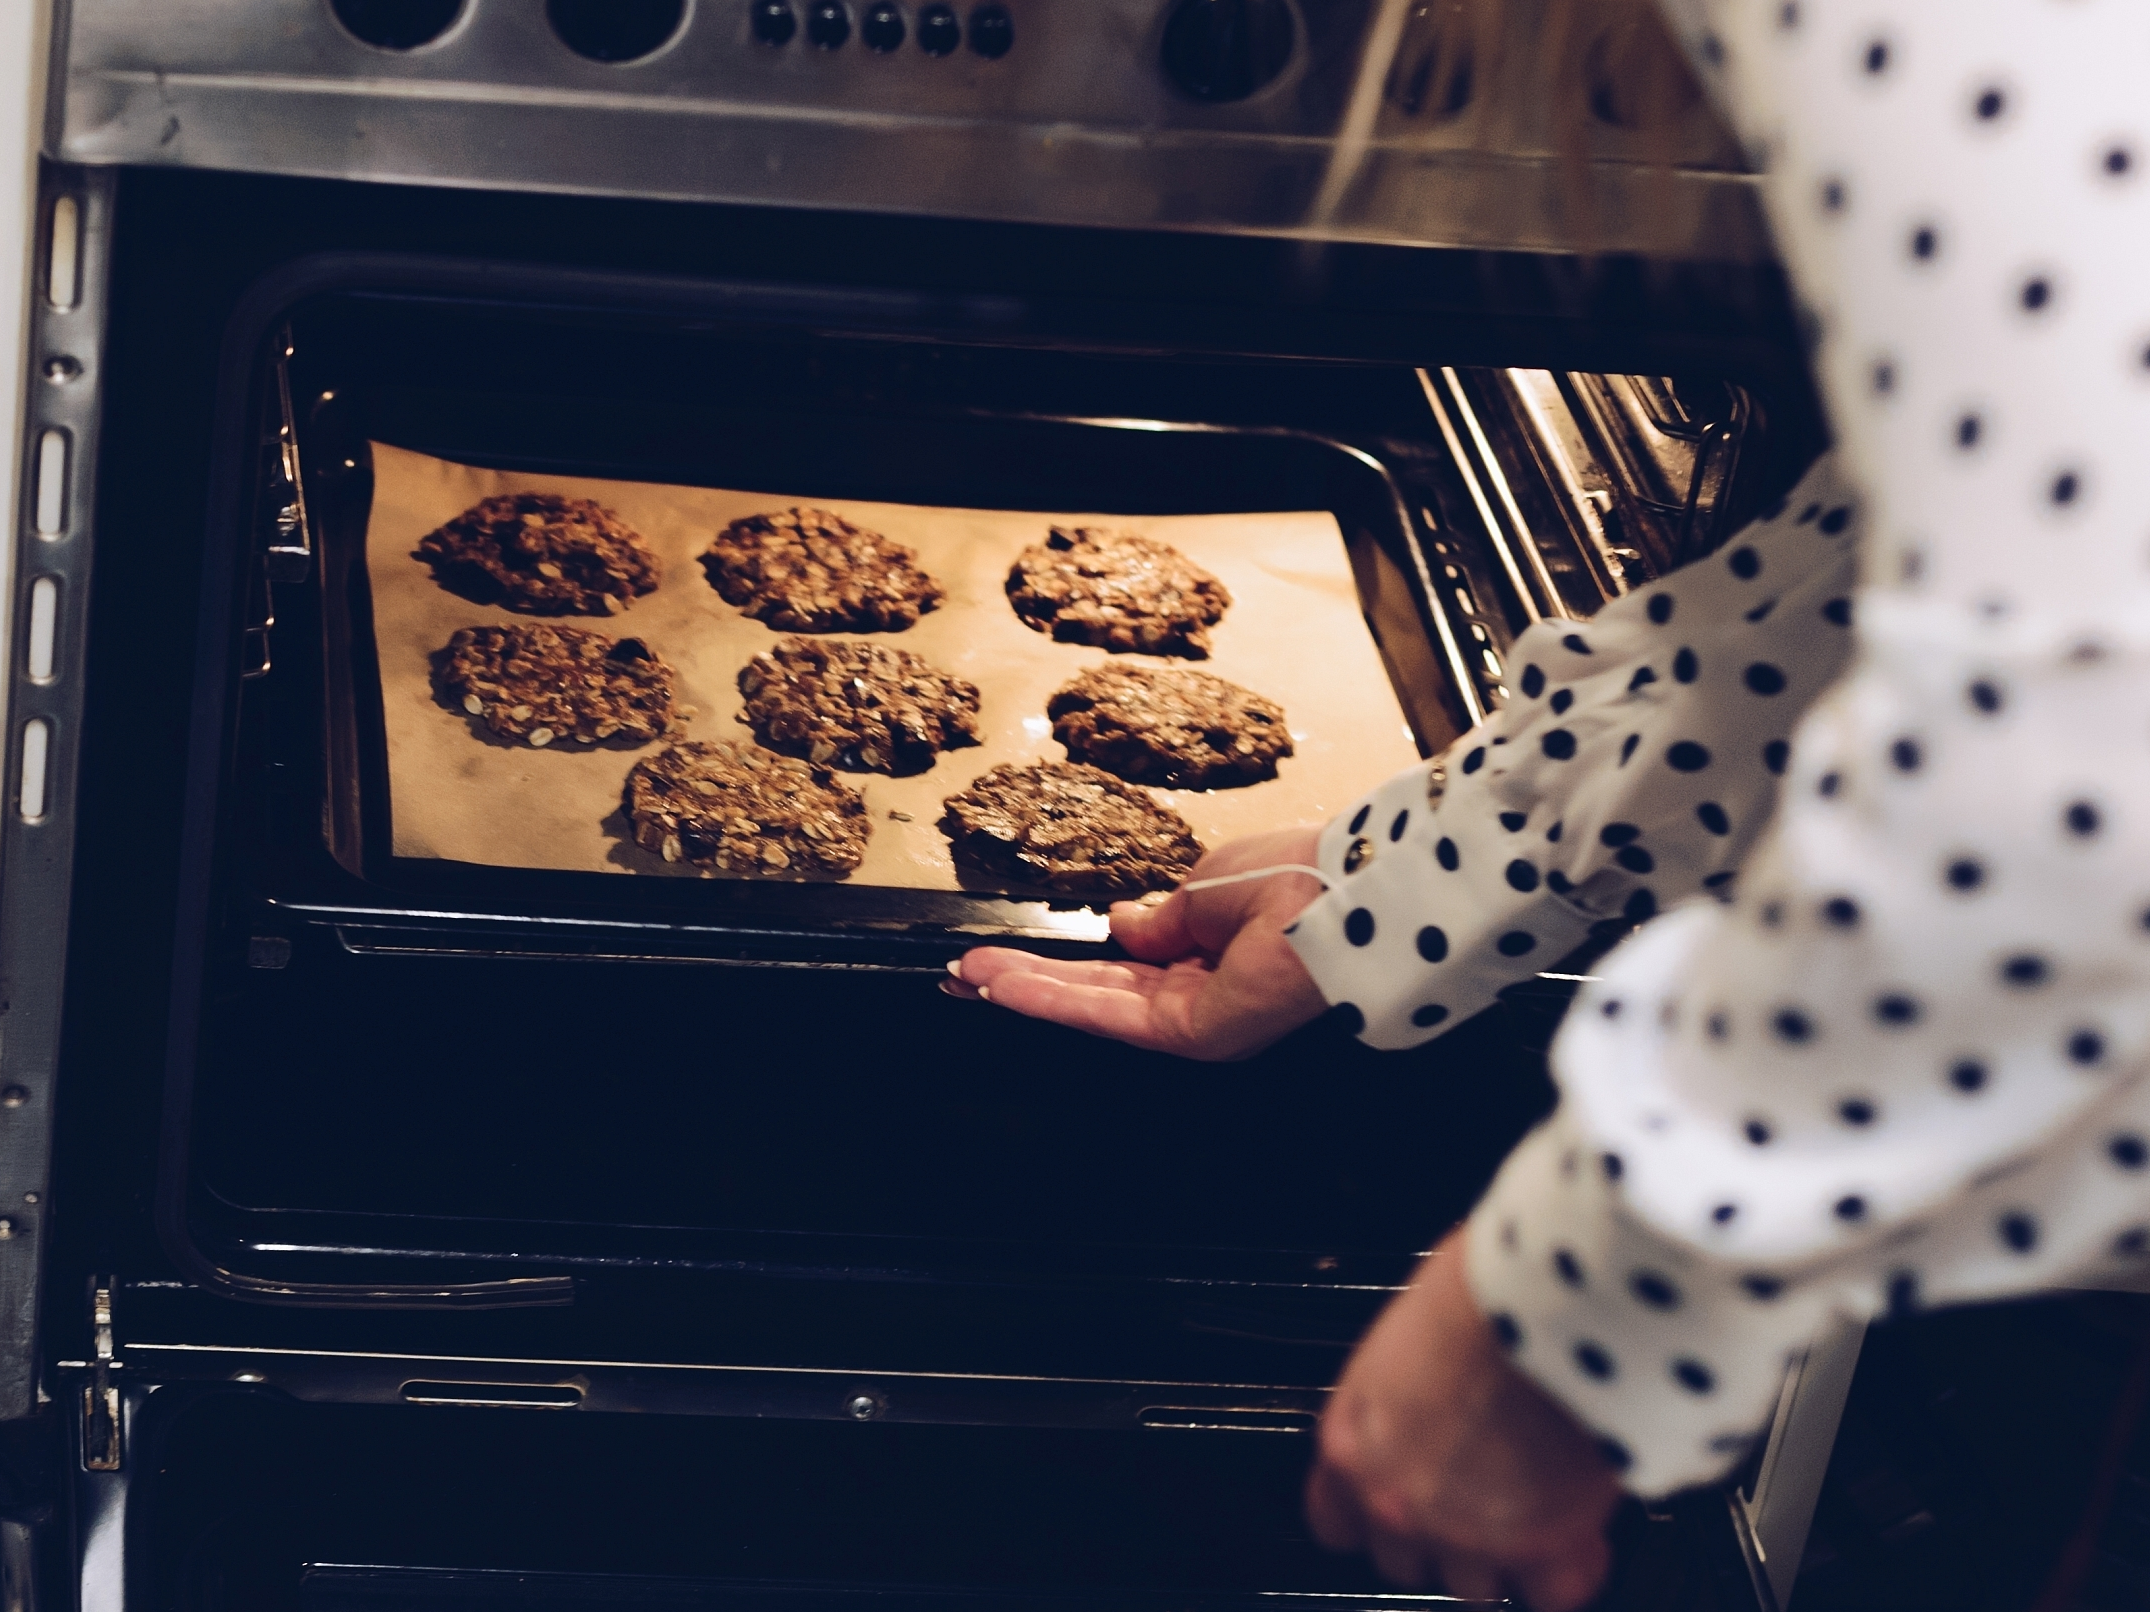 Печь печенье. Печенье из духовки. Печет печенье в духовке. Духовка с печеньем внутри. В микроволновке можно печь пироги